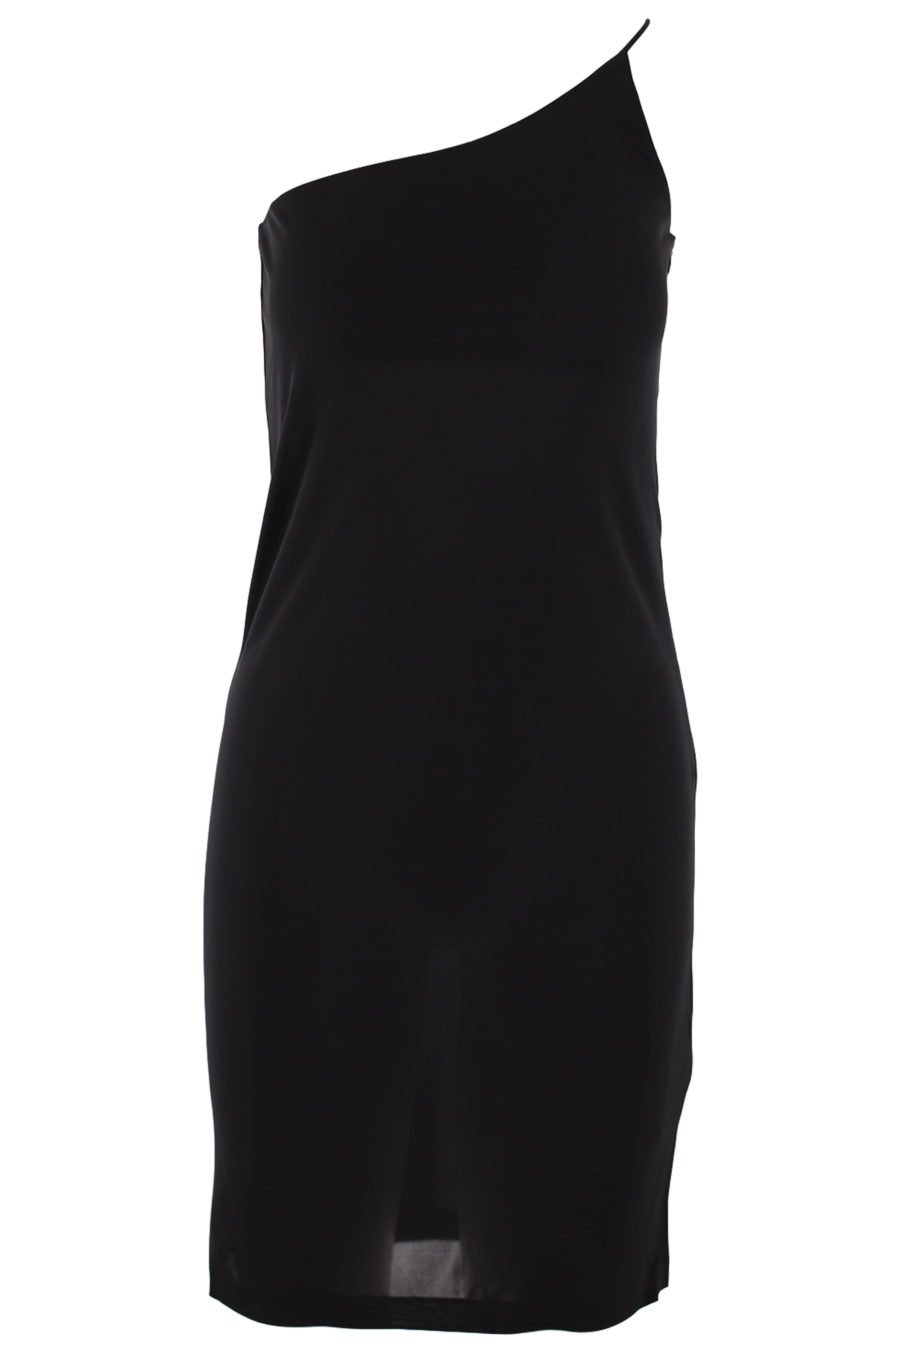 Vestido negro asimétrico - IMG 0729